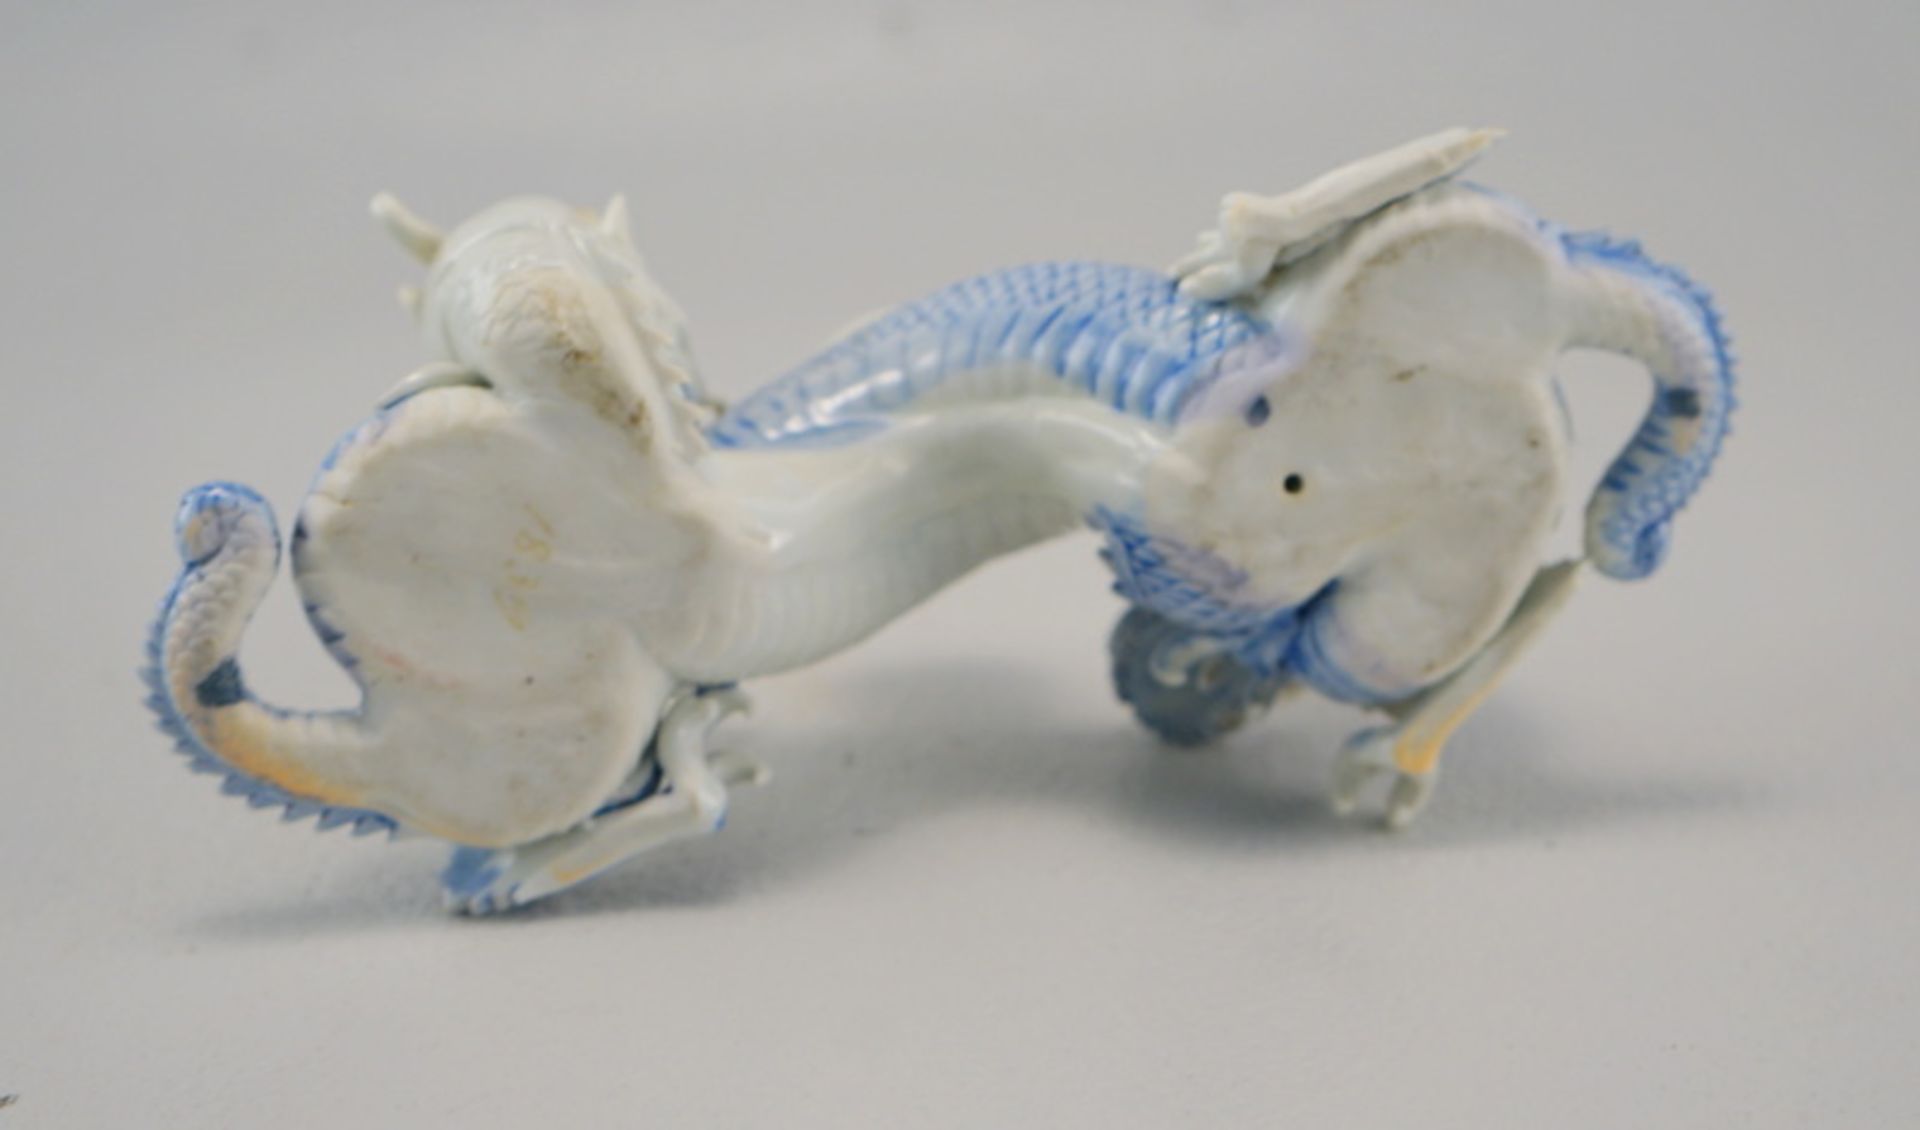 Blauer und Weißer Drache, verschlungen, als Räucherhalter, Dehua China - Image 3 of 3